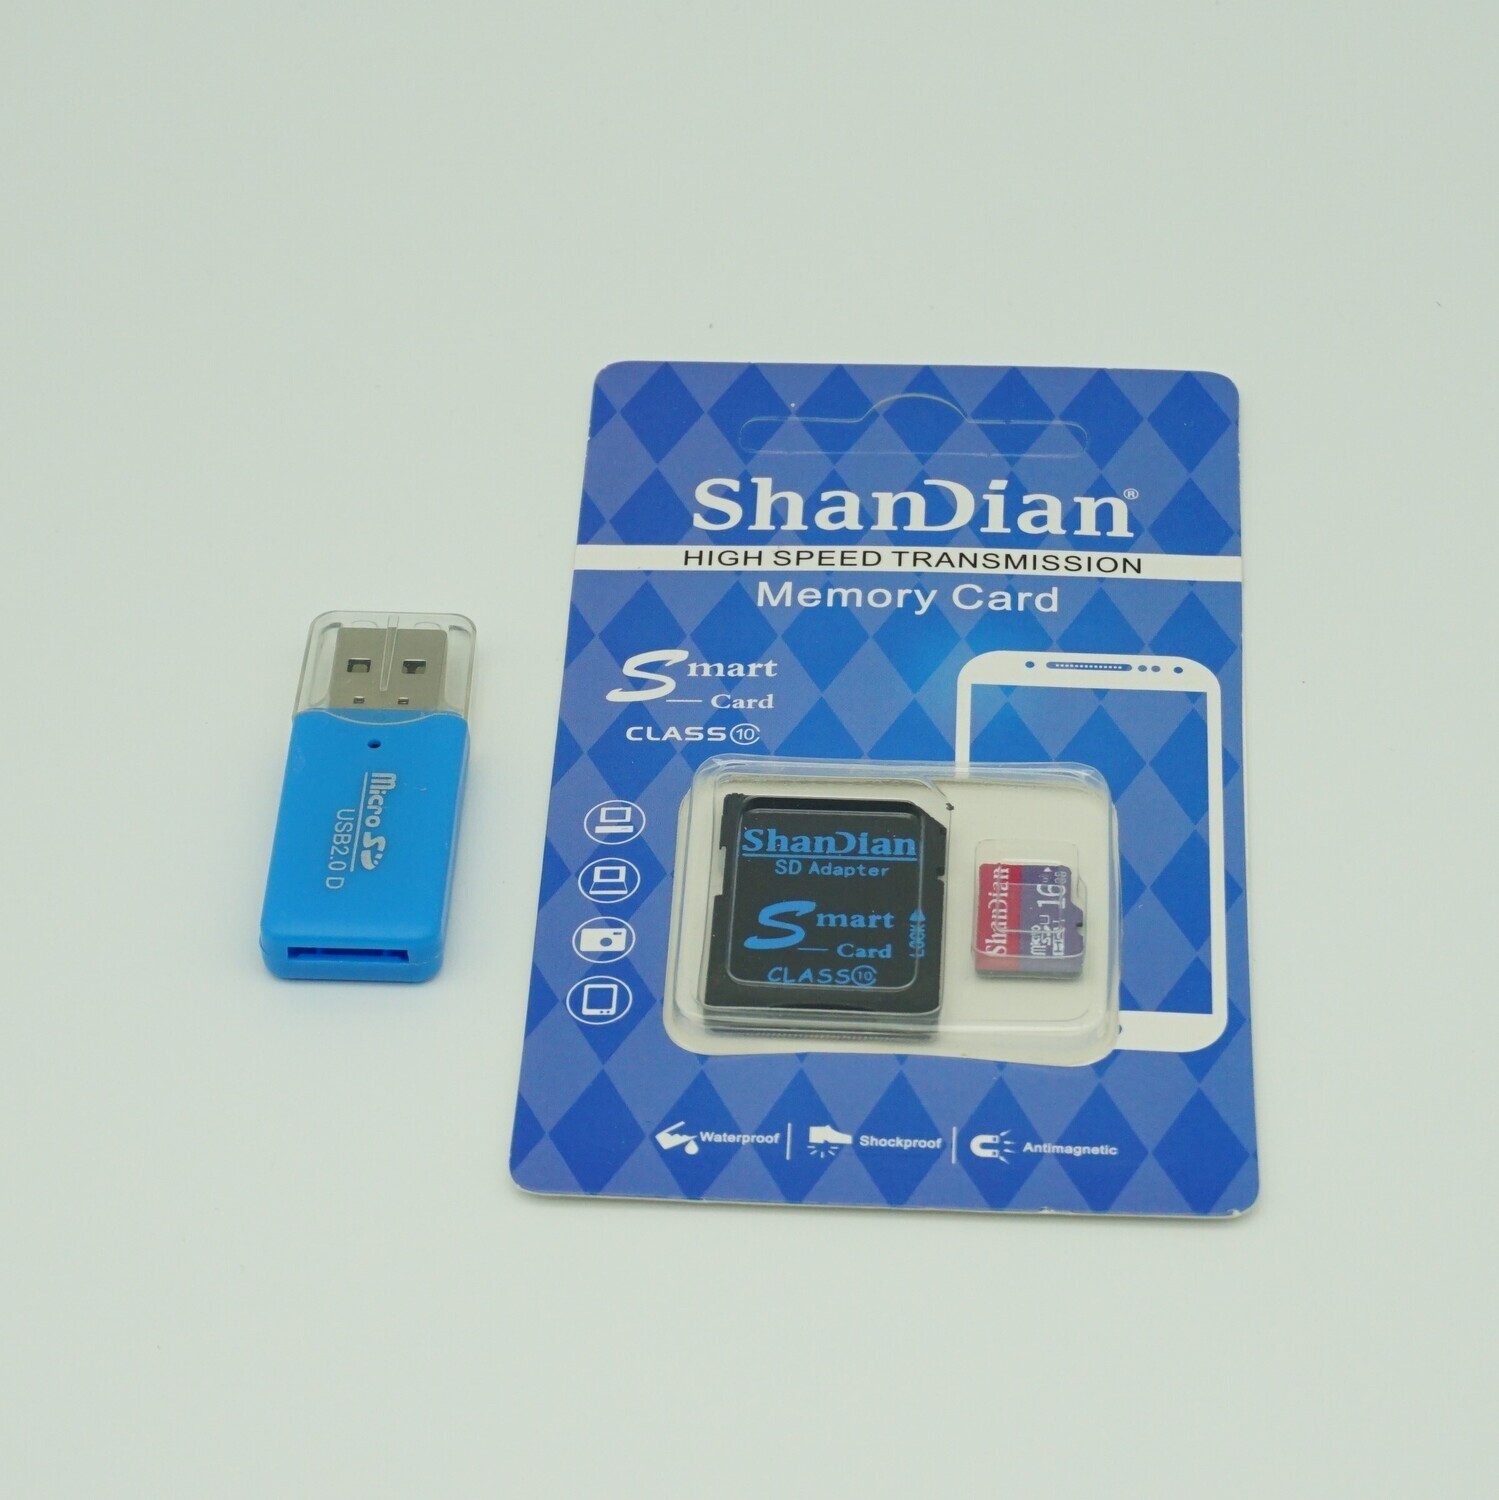 SD Card 16 GB